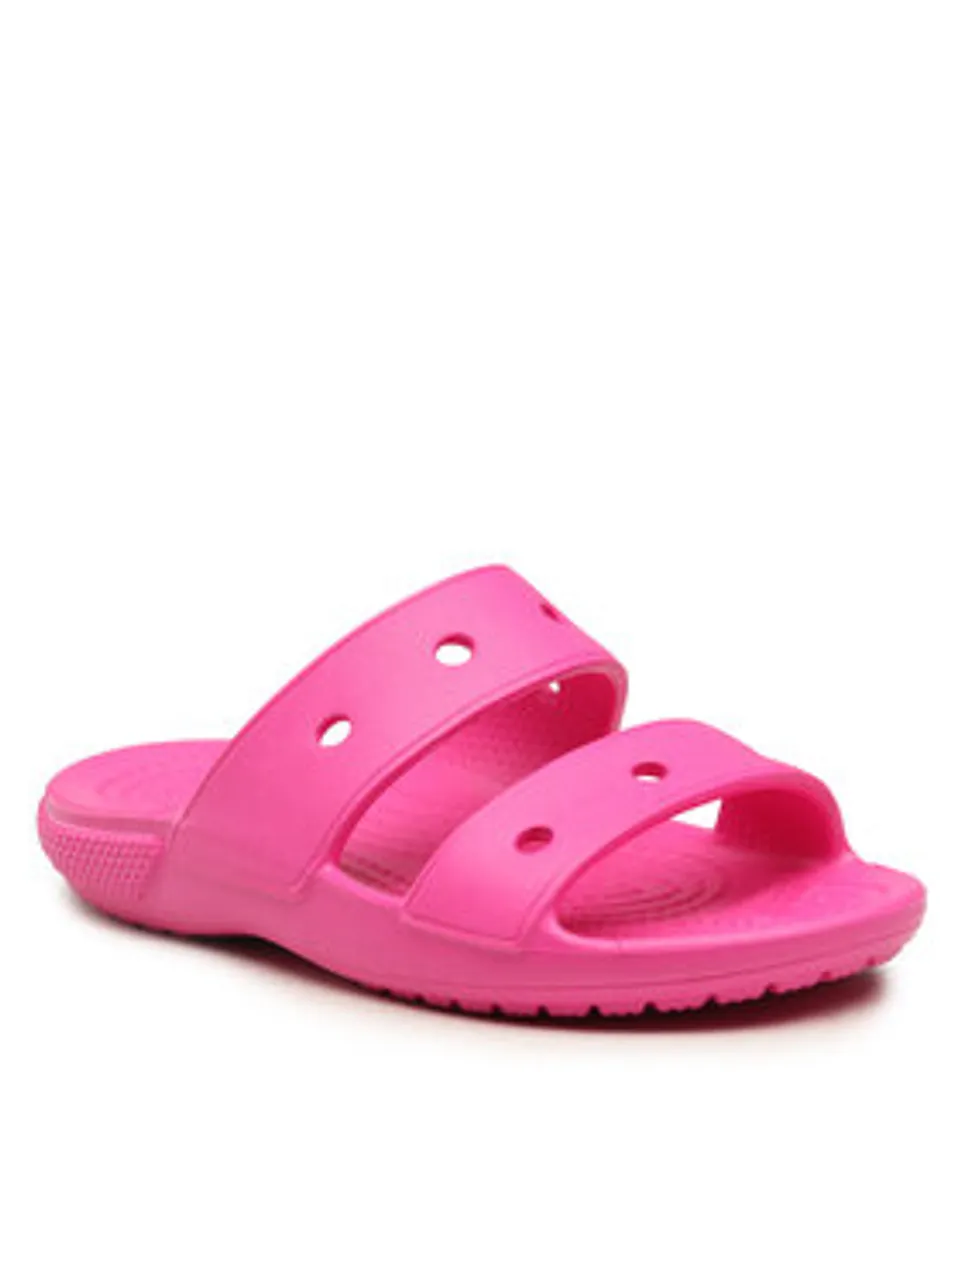 Crocs Pantoletten Classic Sandal Kids 207536 Rosa